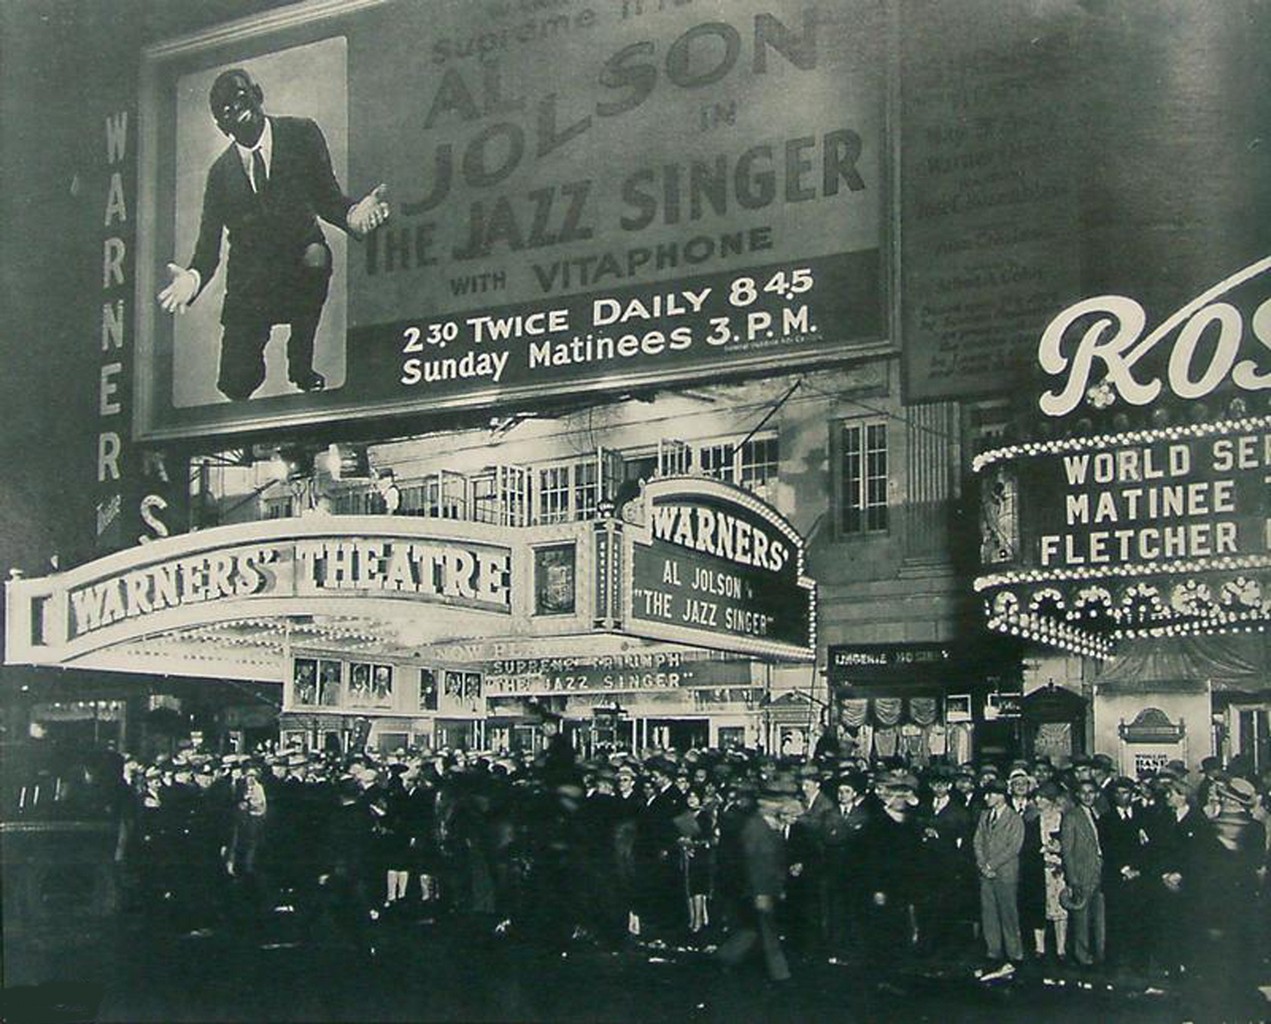 Премьера в «Уорнерс Театр» ( Warners' Theater) в Нью-Йорке (New York) 6 октября 1927 года. the jazz singer